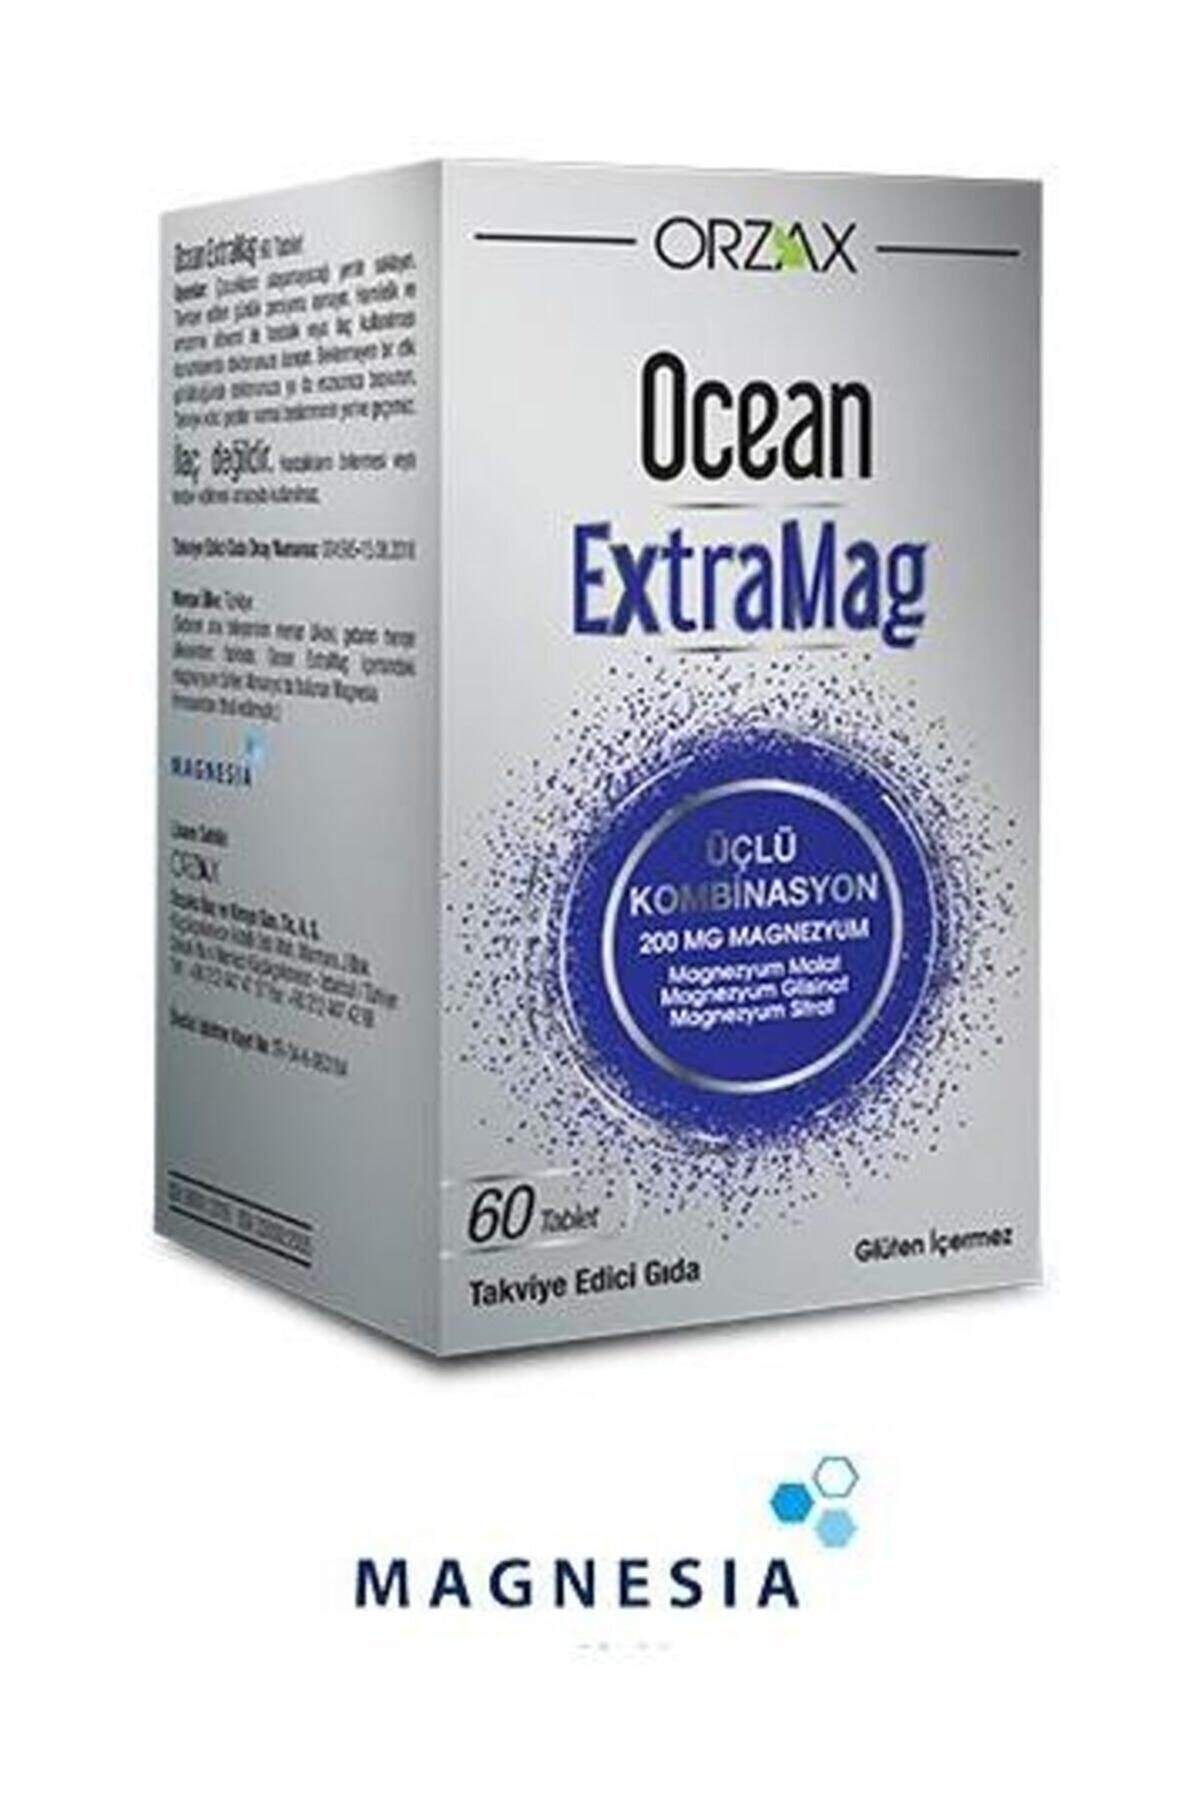 OC Ean Extramag 60 Tablet